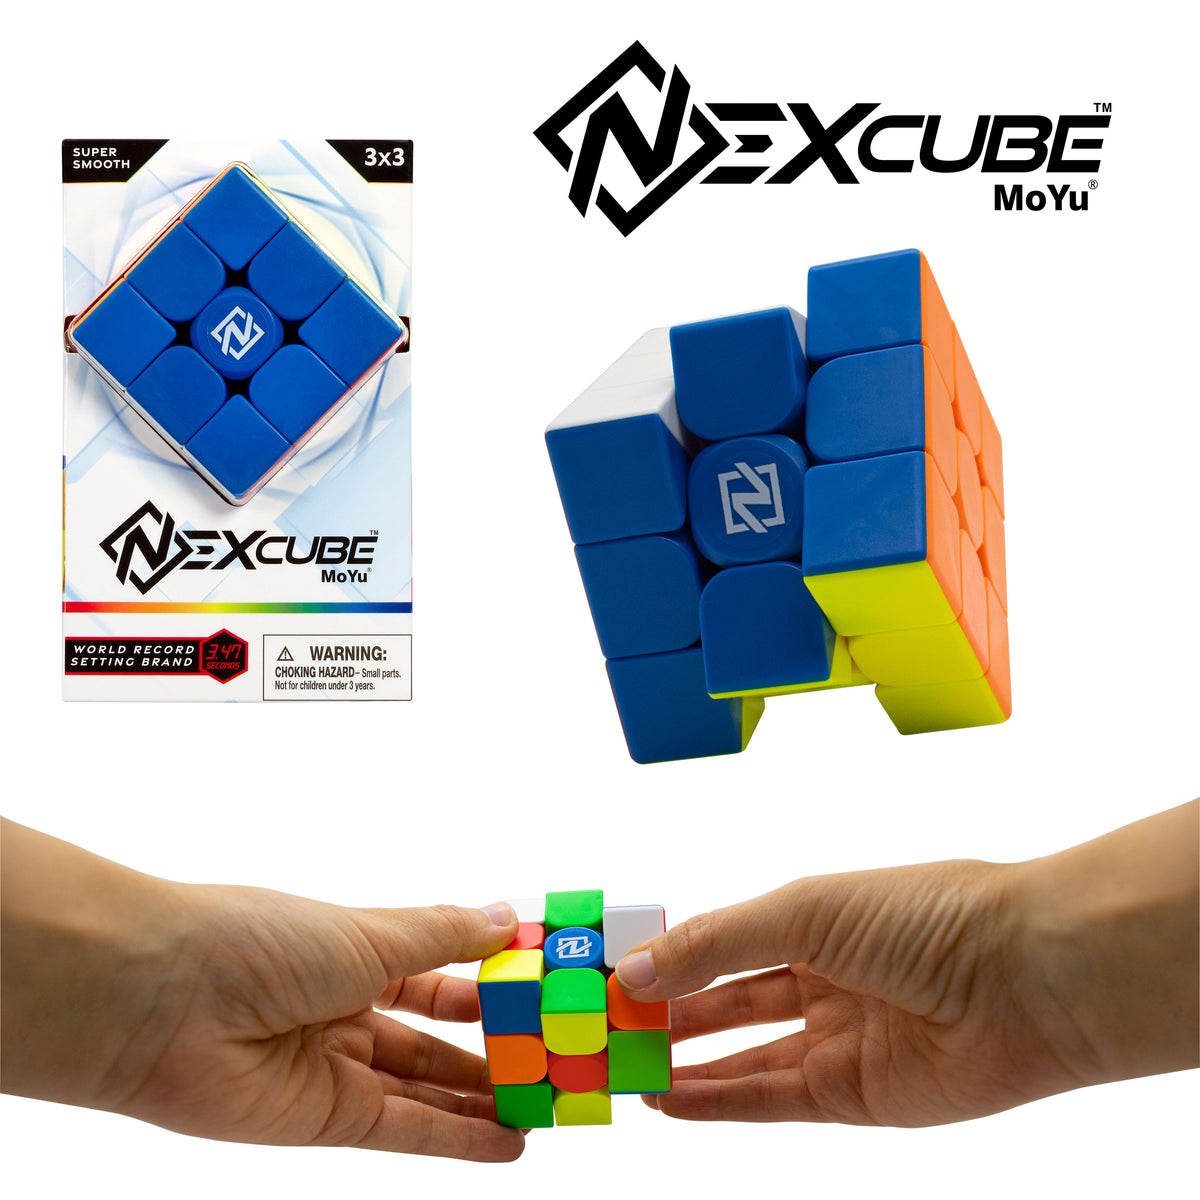 PAKA Nexcube 3x3 classic